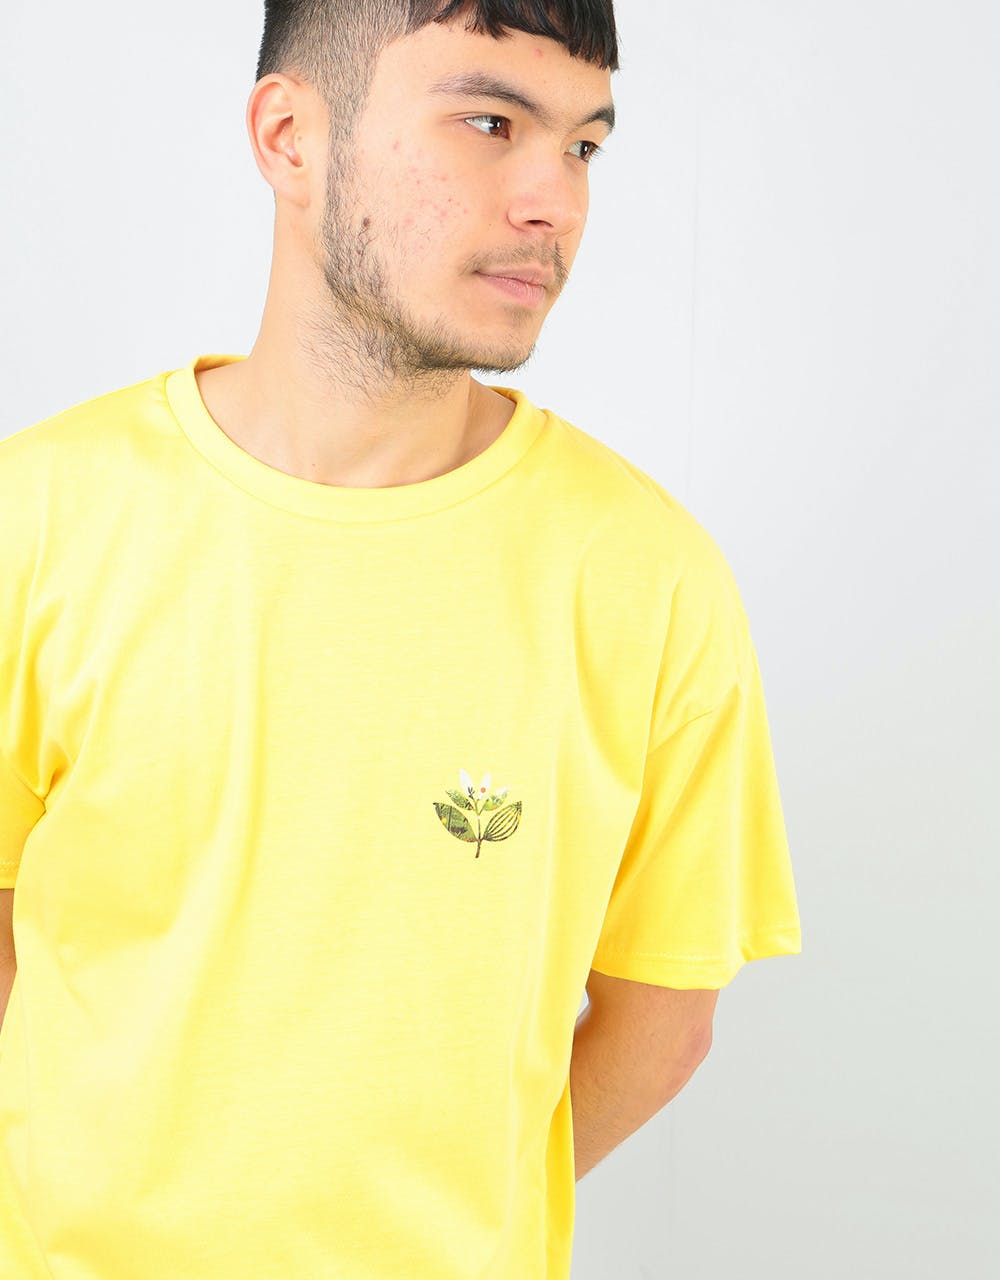 Magenta Jungle 2 T-Shirt - Yellow